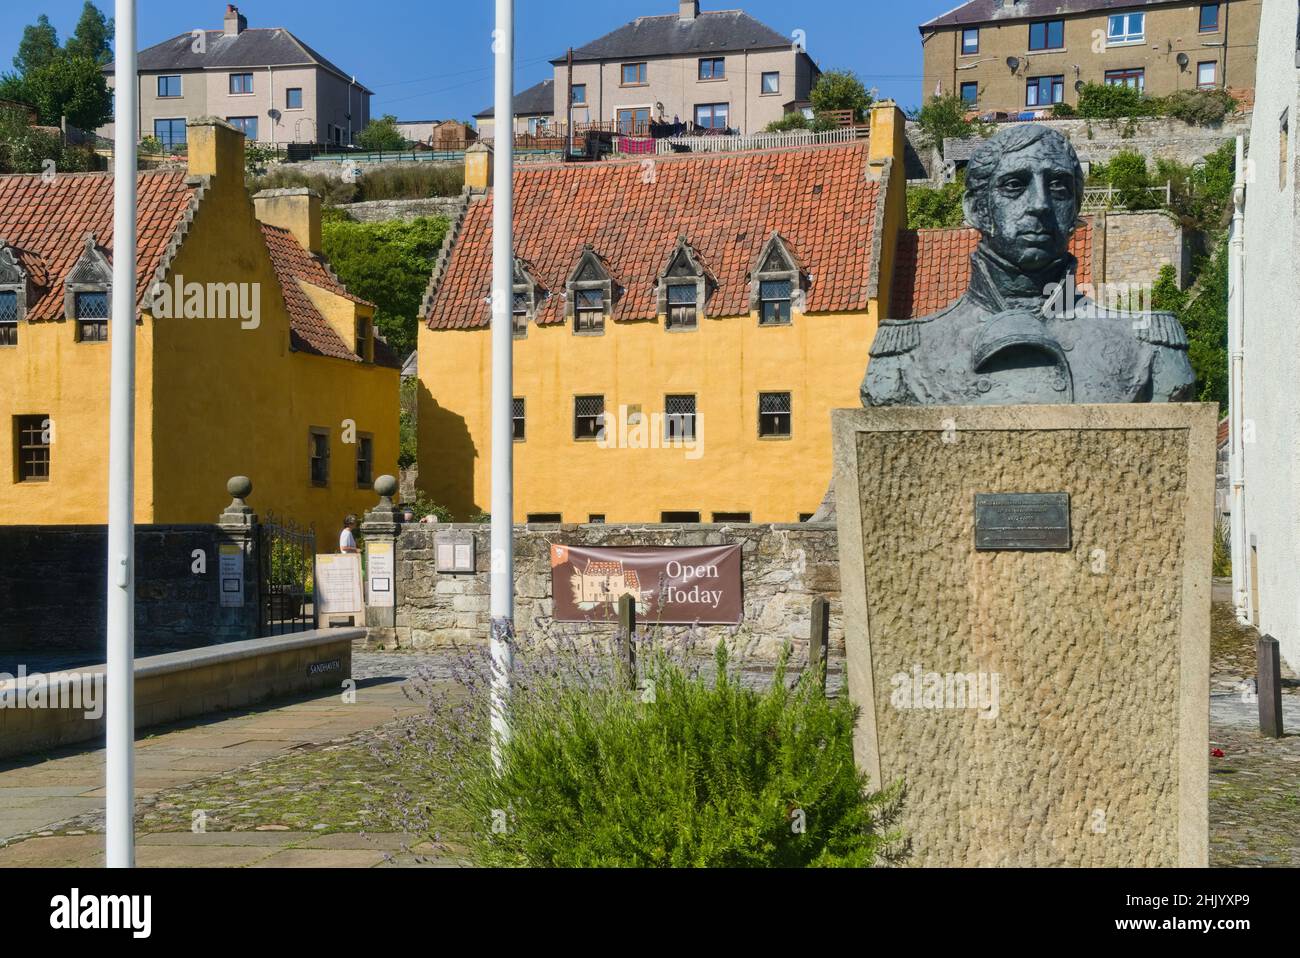 Ancien village de Culross sur la route côtière de Fife.Montrant la statue, buste de l'amiral Lord Alexander Cochrane.Palace, Culross, Fife, Écosse, royaume-uni Banque D'Images